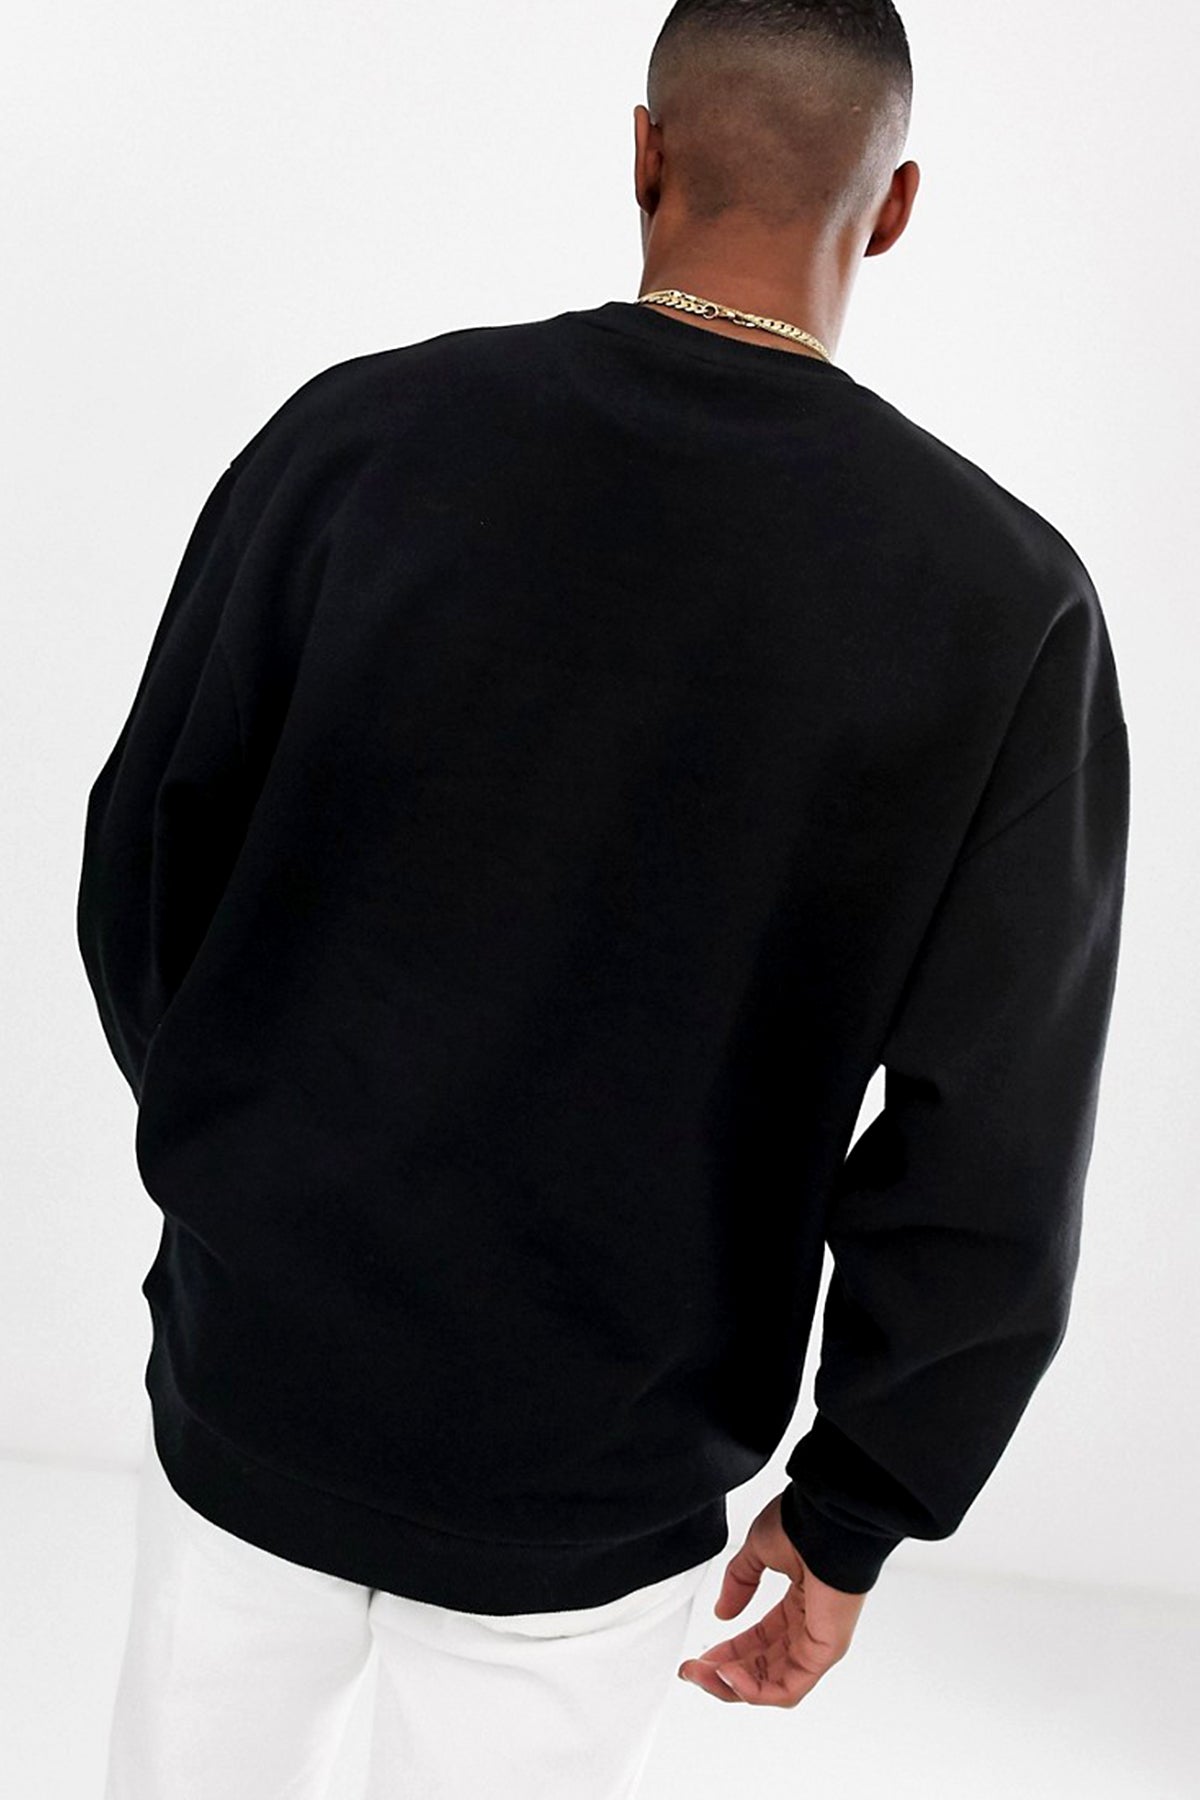 Antique Series 1 Oversize Men's Sweatshirt